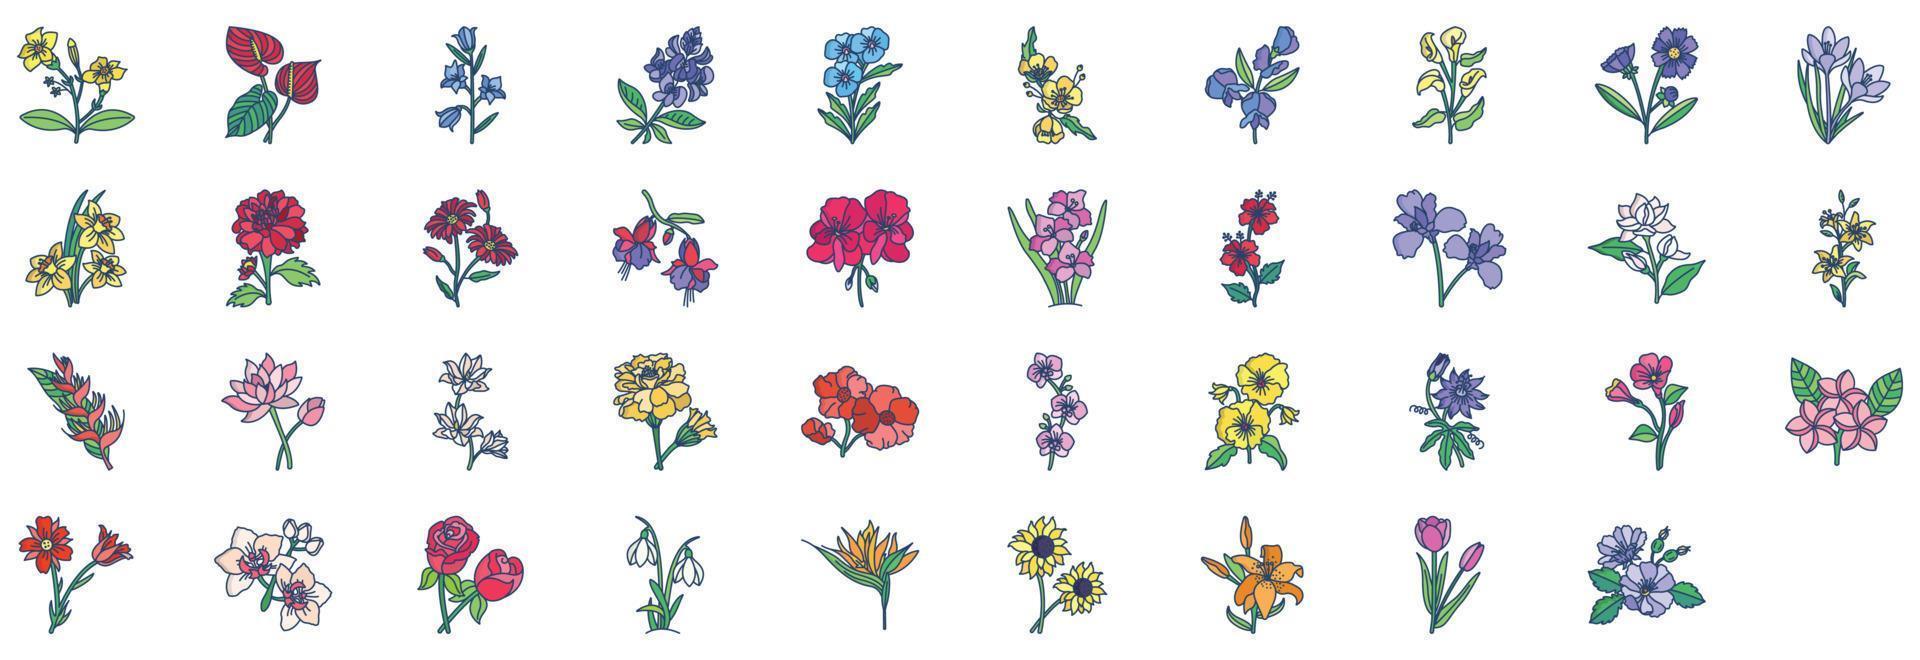 colección de íconos relacionados con las flores, incluidos íconos como fucsia, margarita, girasol y más. ilustraciones vectoriales, conjunto perfecto de píxeles vector